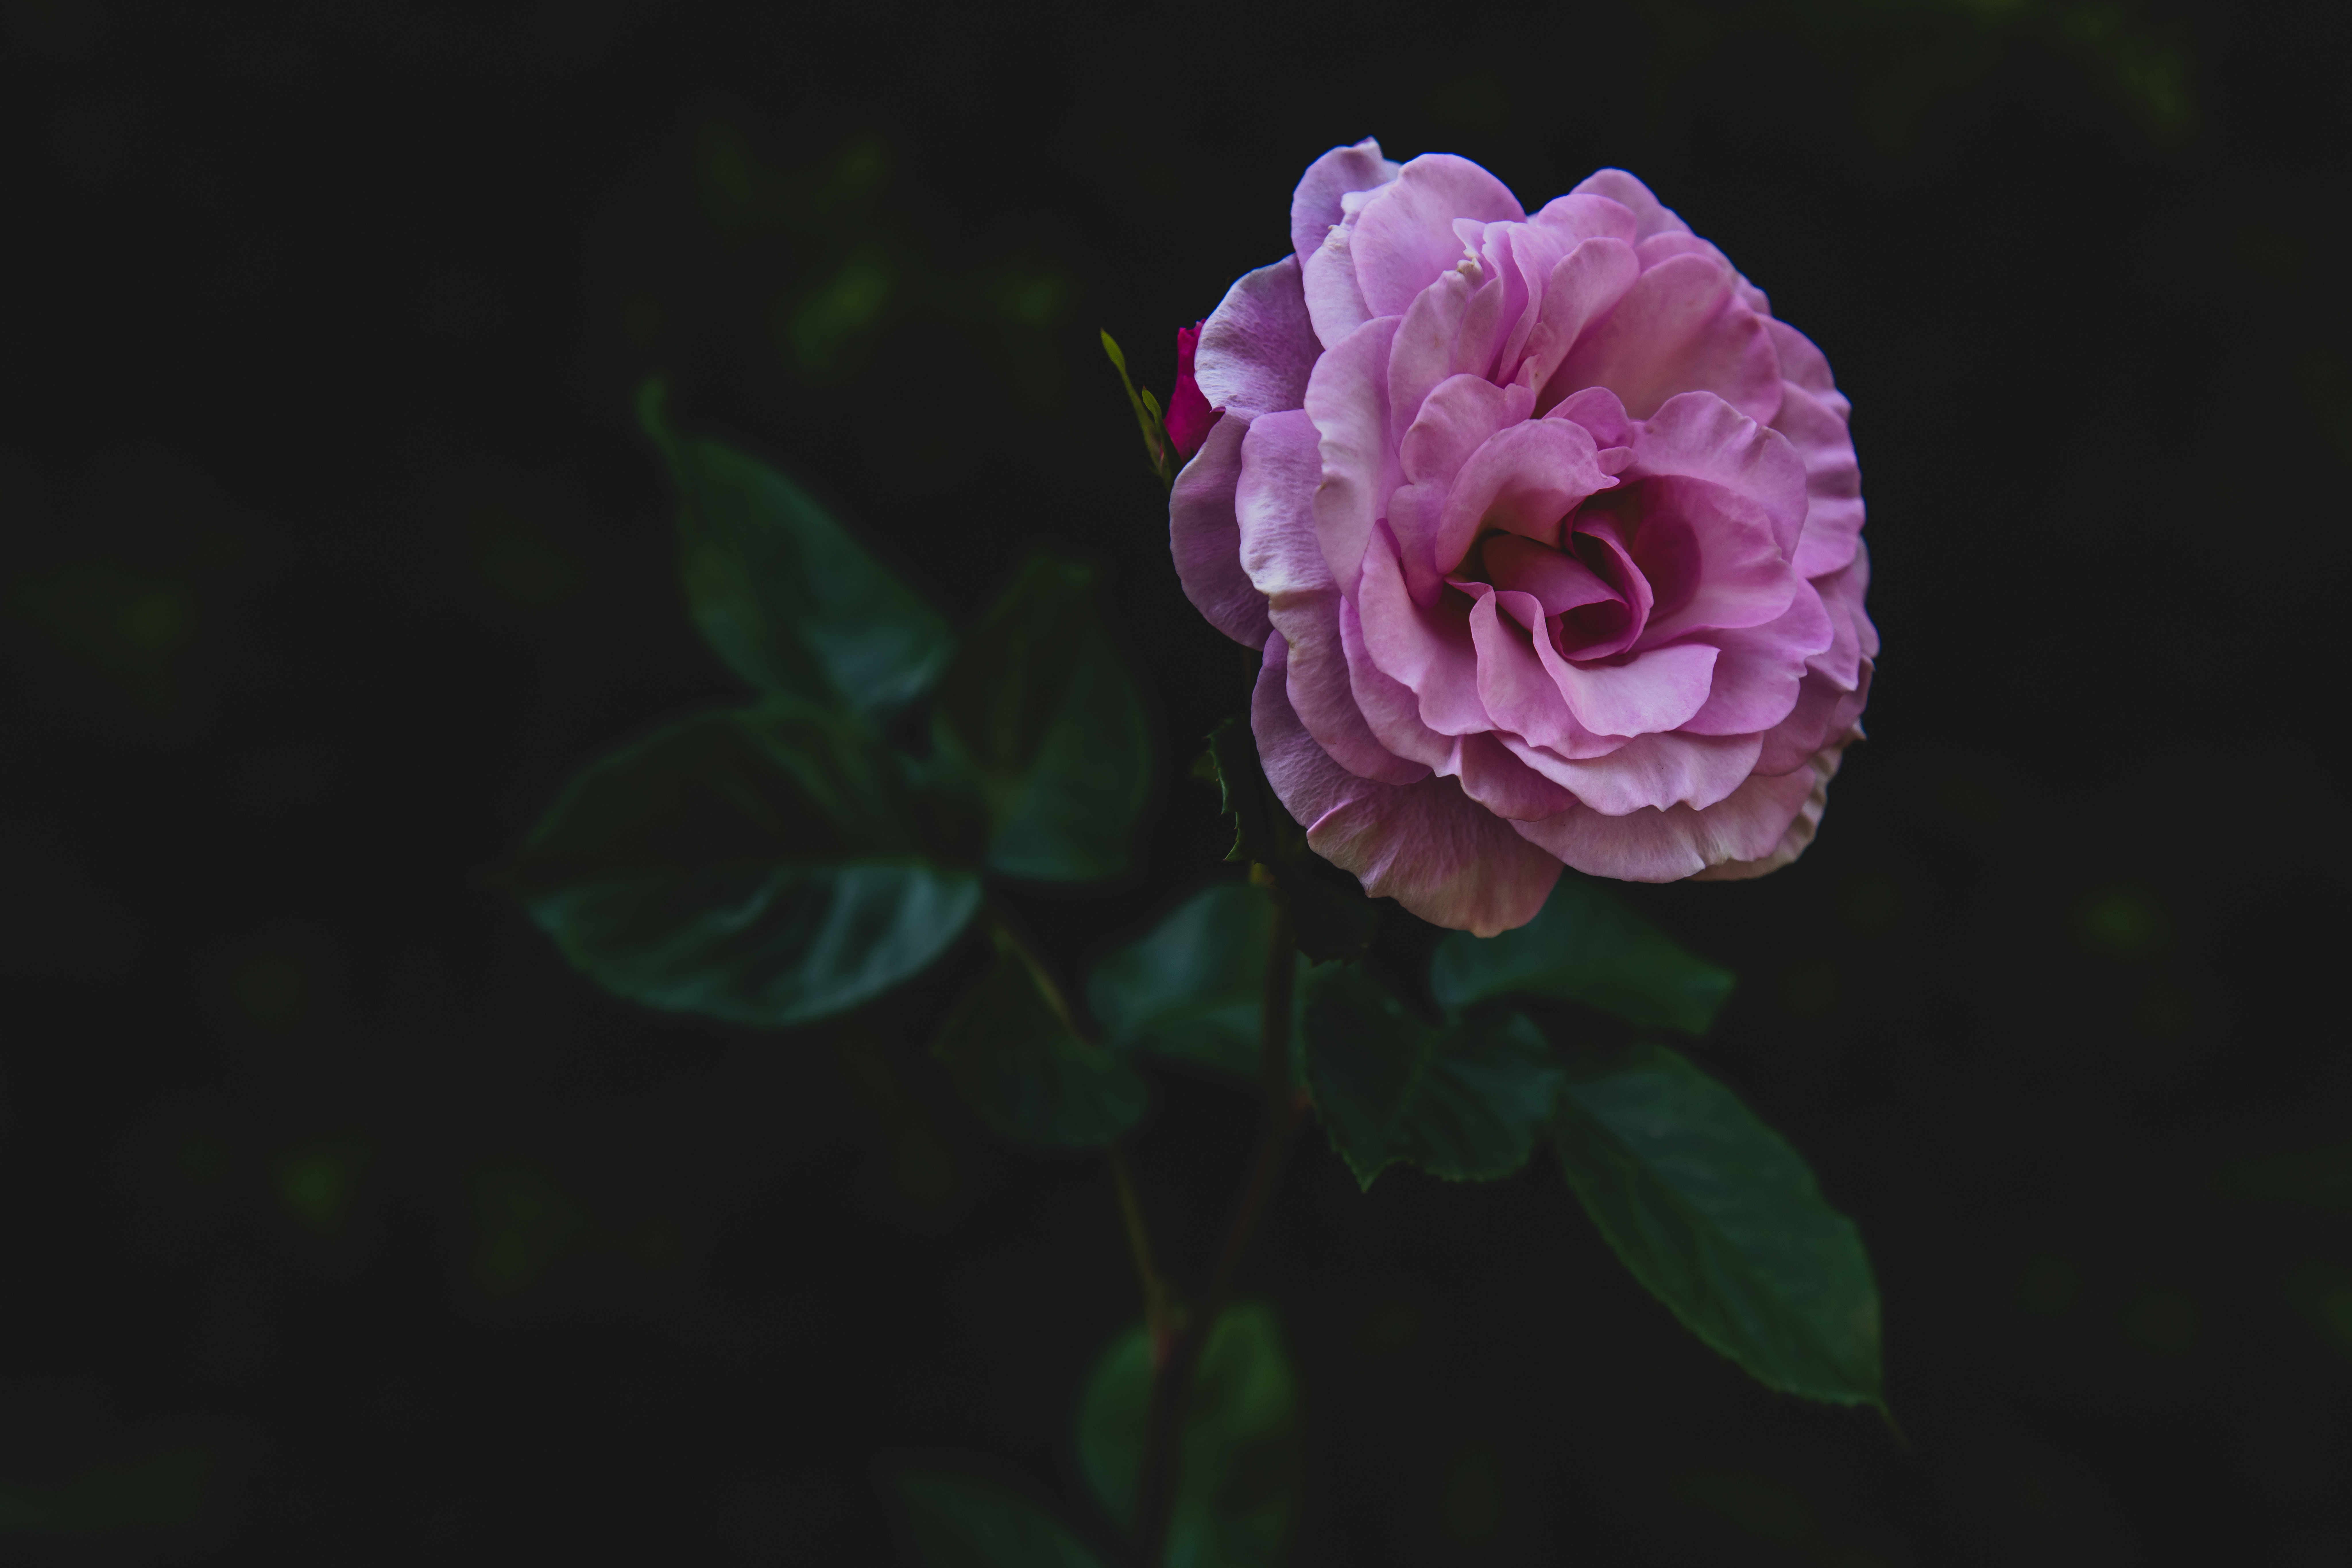 android bud, flowers, pink, rose flower, rose, petals, stalk, stem